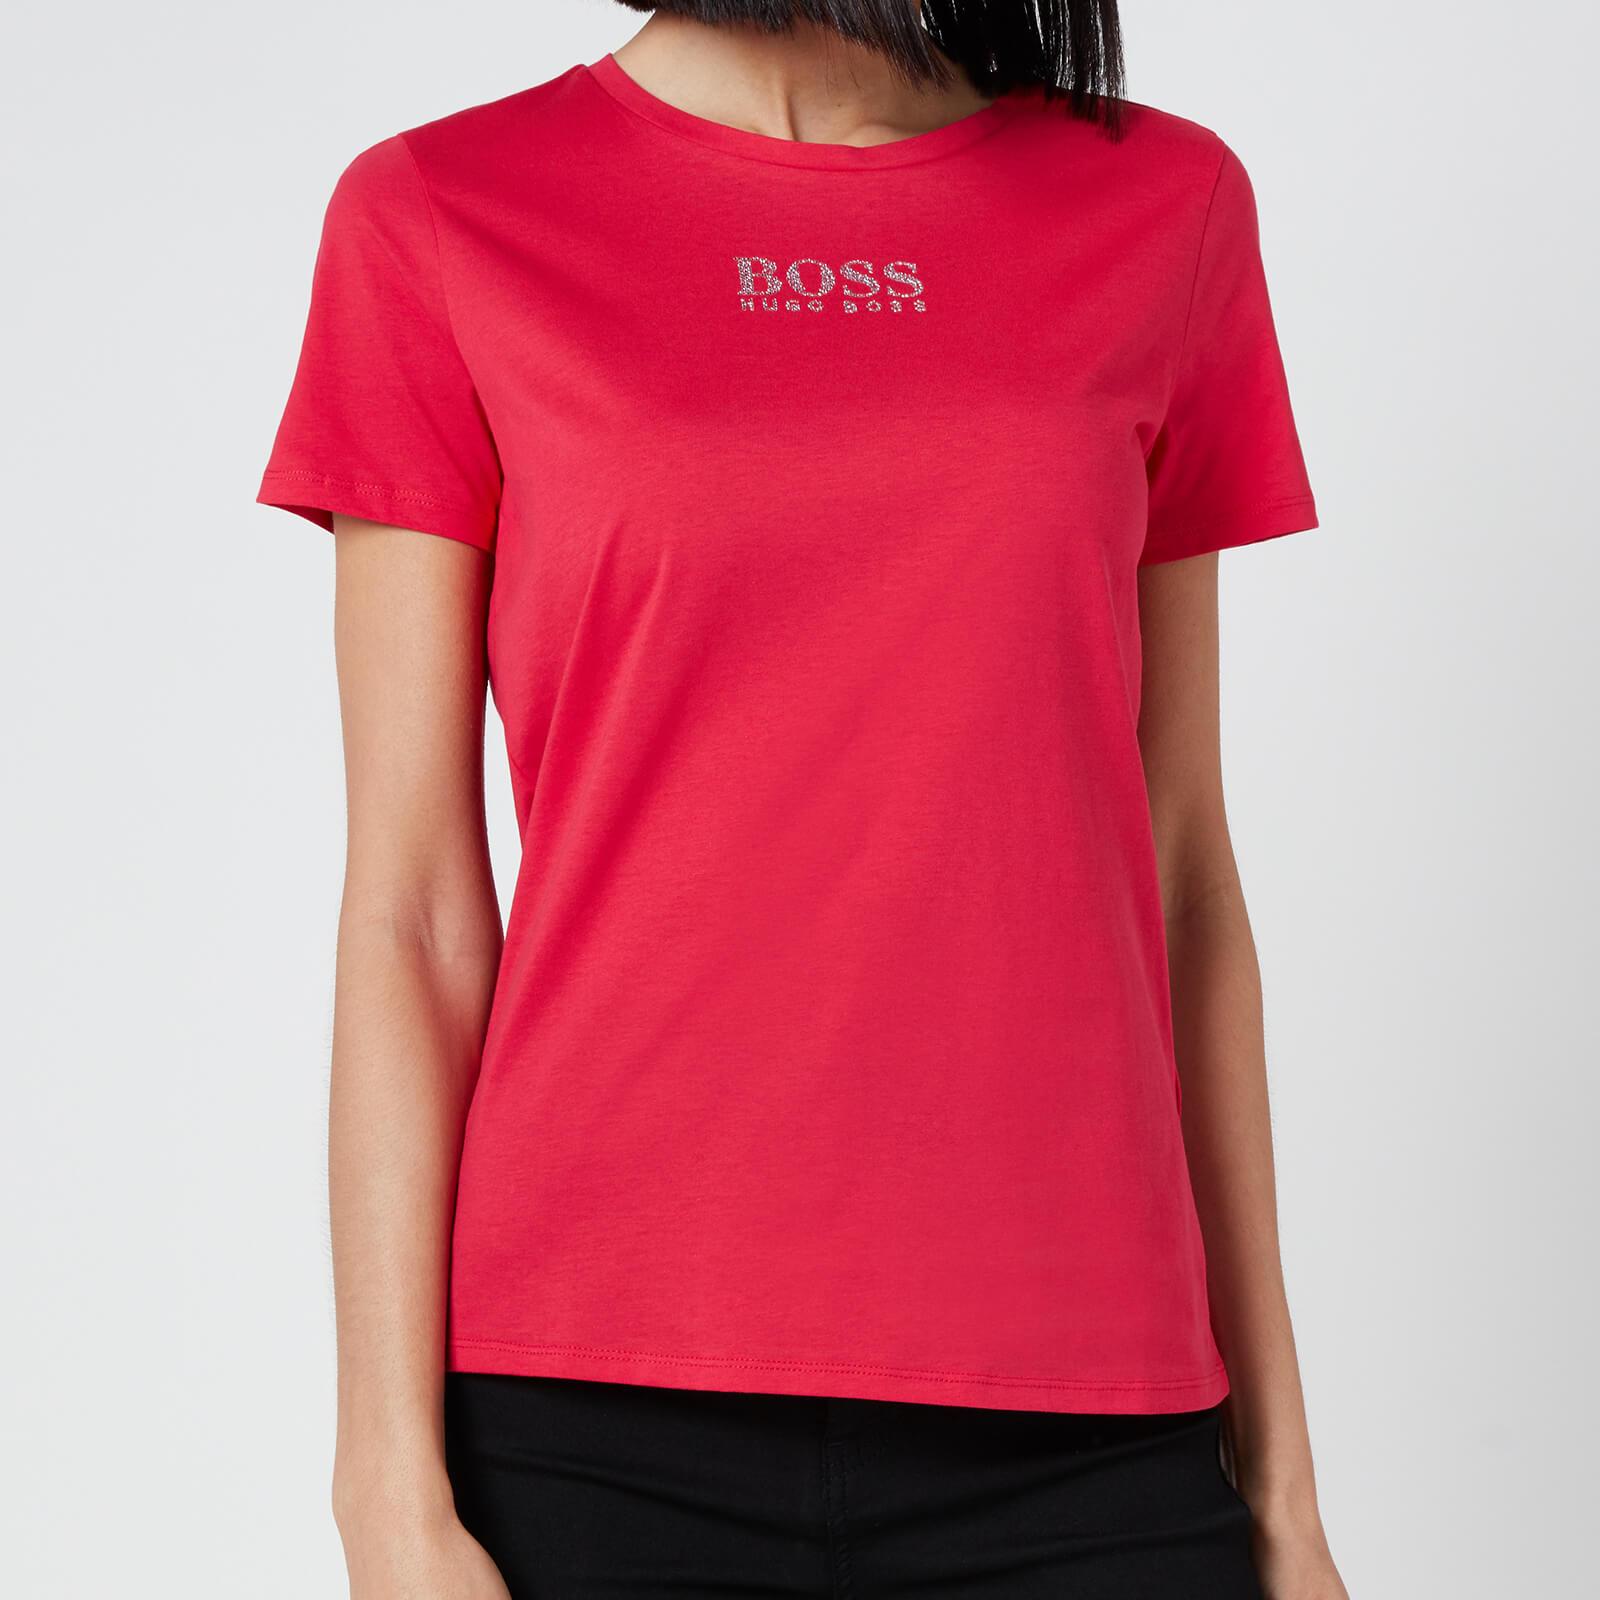 BOSS by HUGO BOSS Cotton Boss Eloga T-shirt in Pink - Lyst